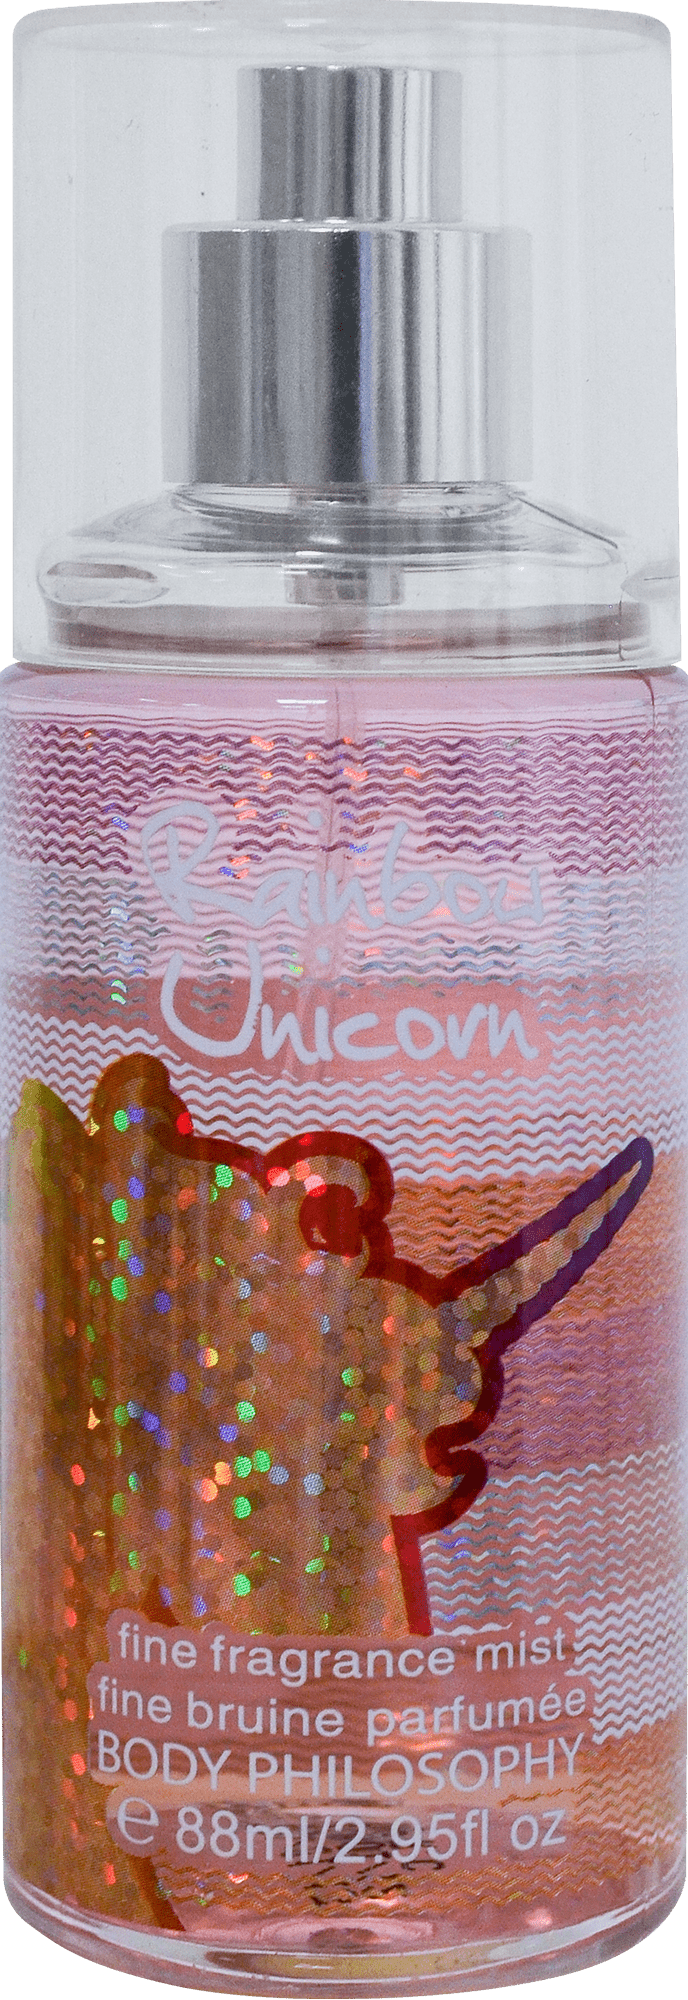 Мост для тела парфюмированный BODY PHILOSOPHY Rainbow Unicorn, 88мл